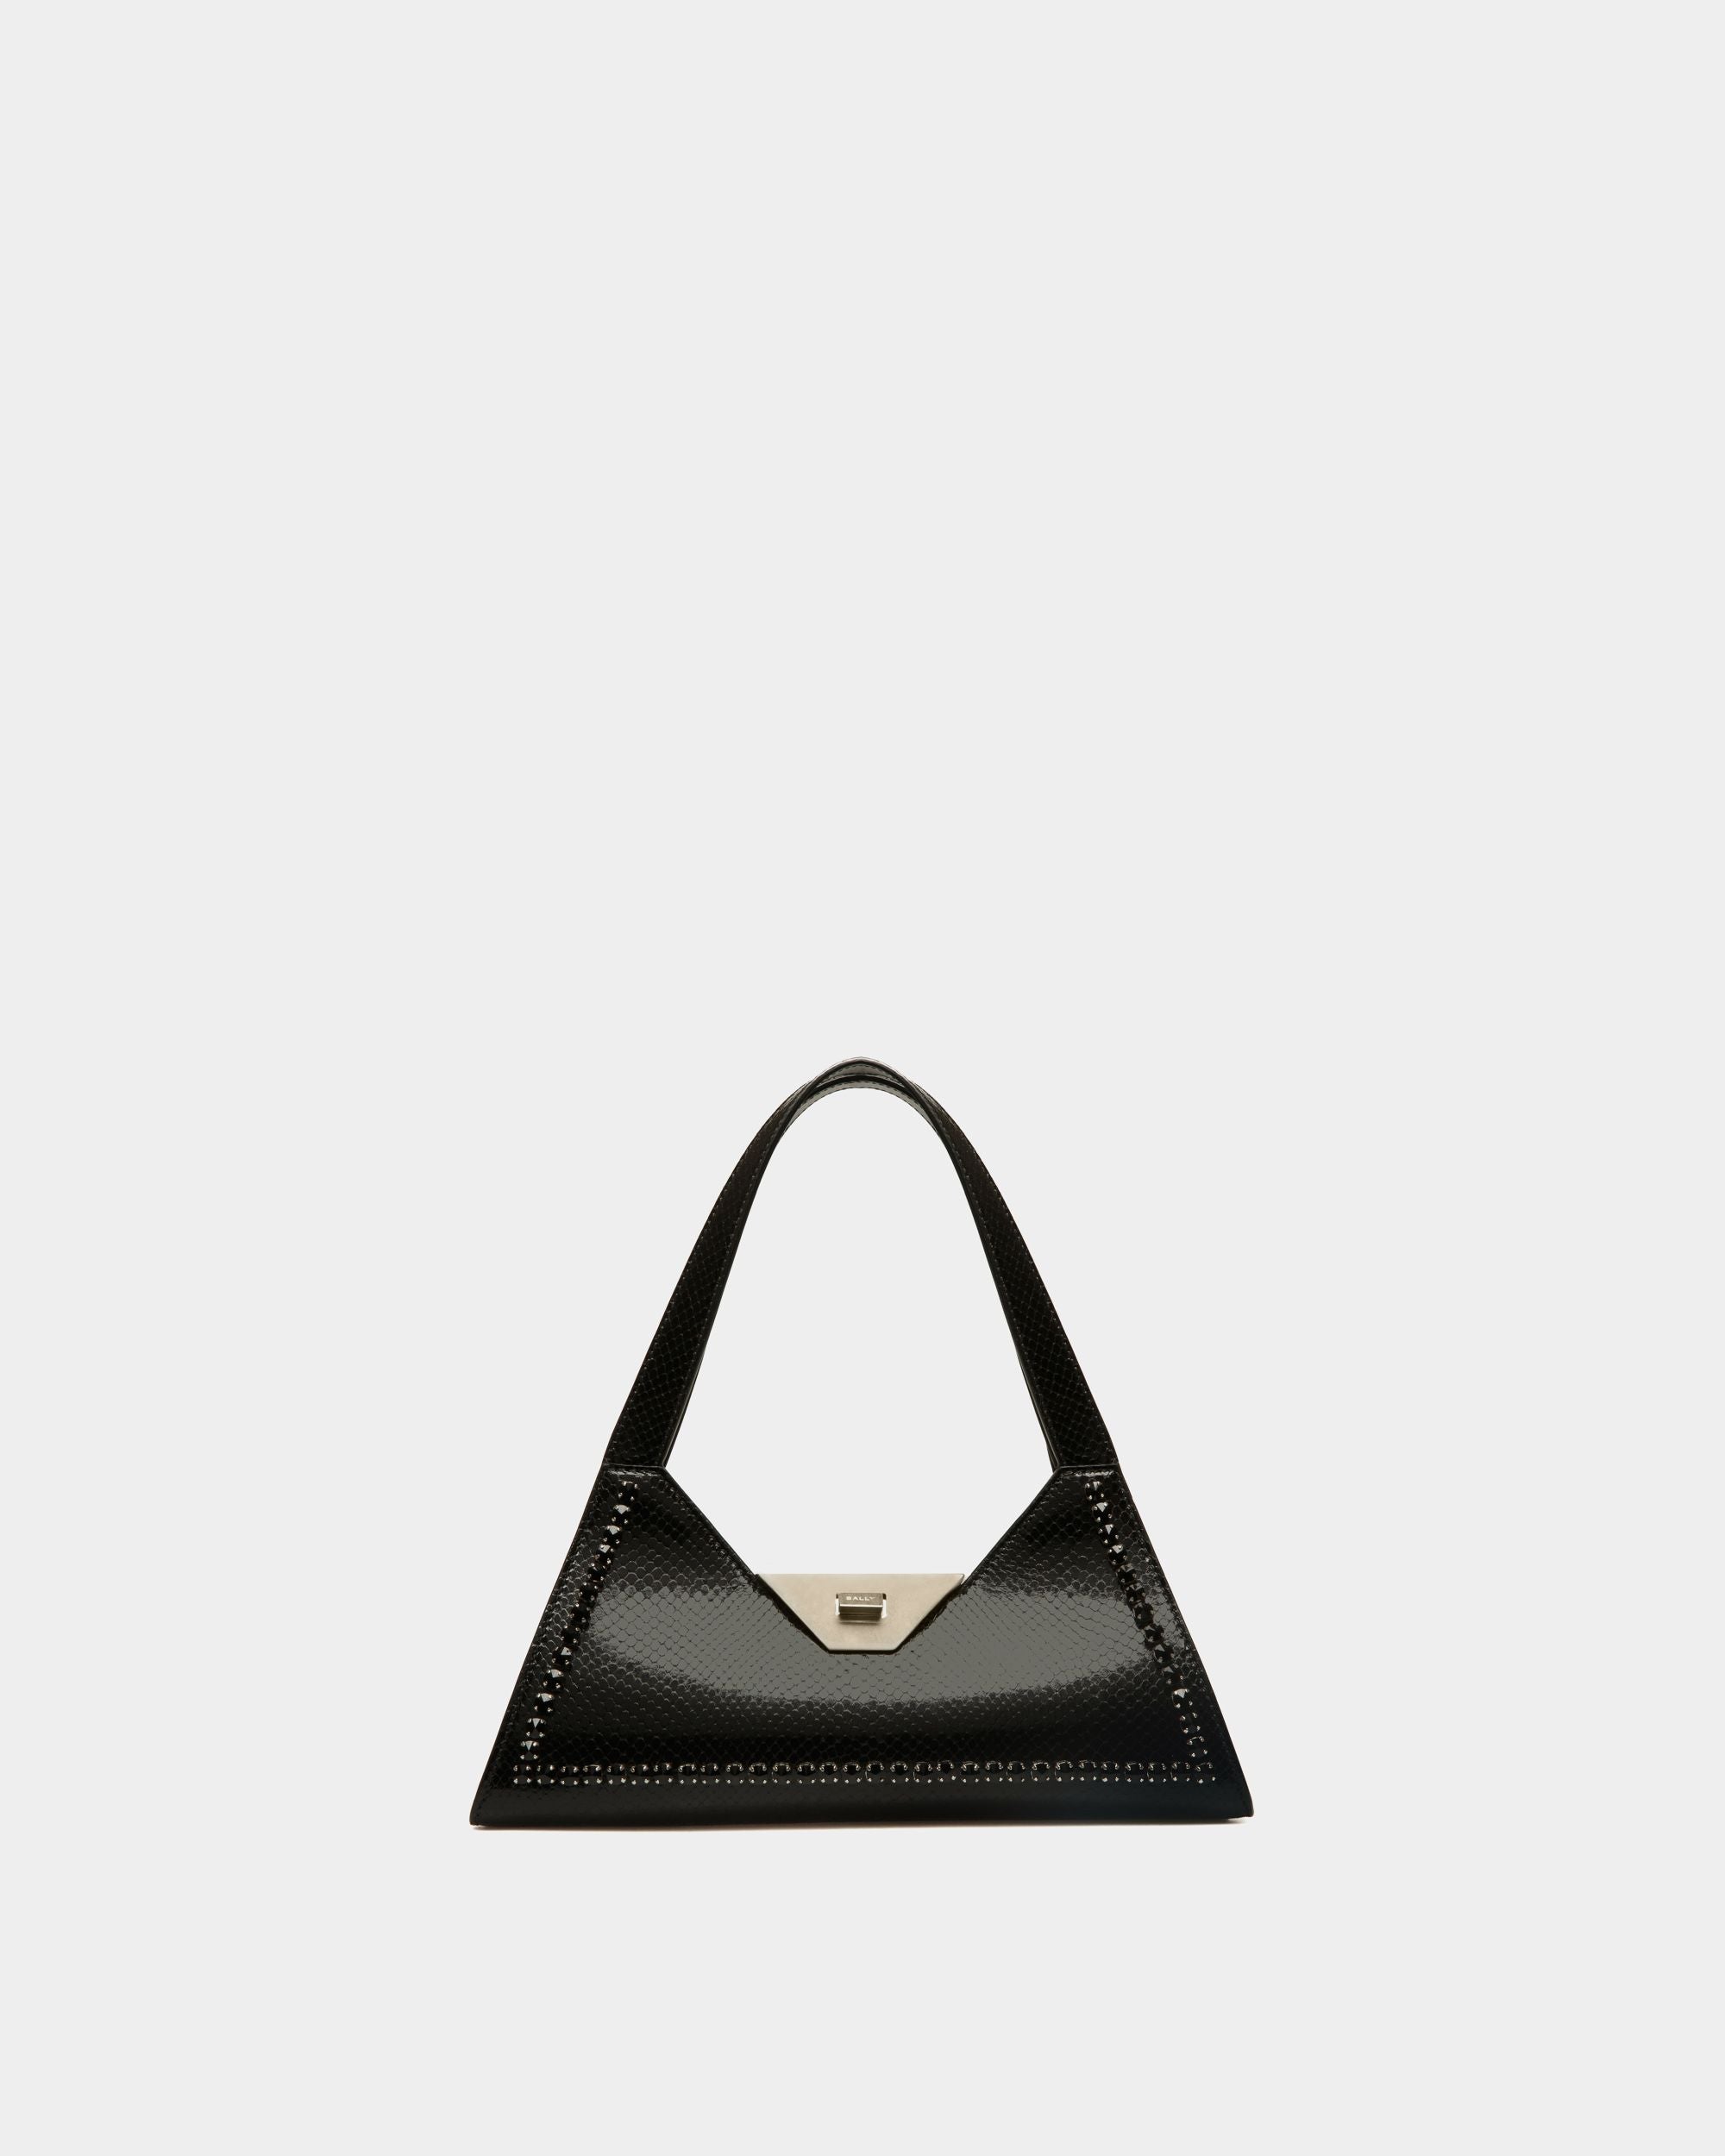 Tilt | Petit sac d’épaule pour femme en cuir noir à imprimé python | Bally | Still Life Devant